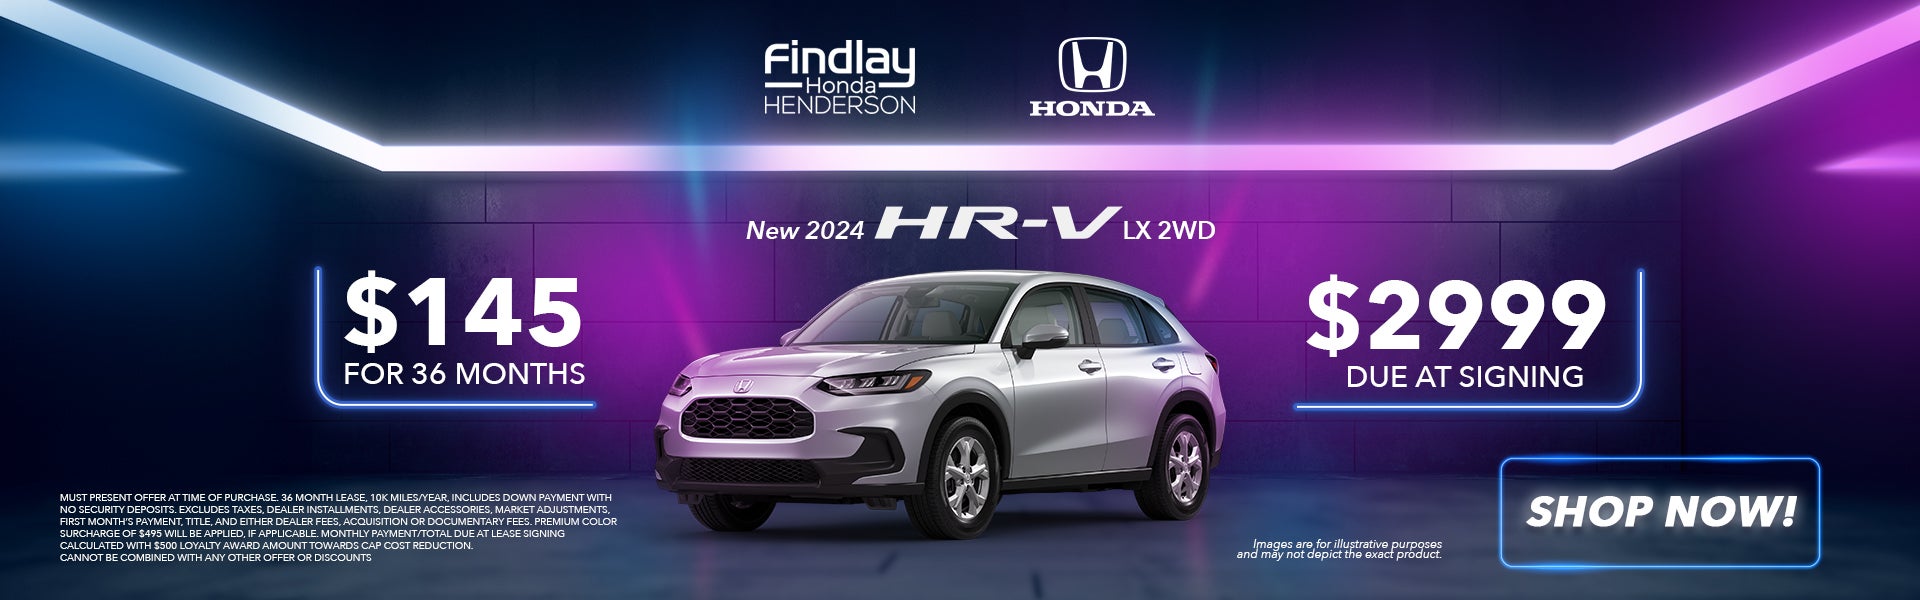 New 2024 HR-V LX 2WD